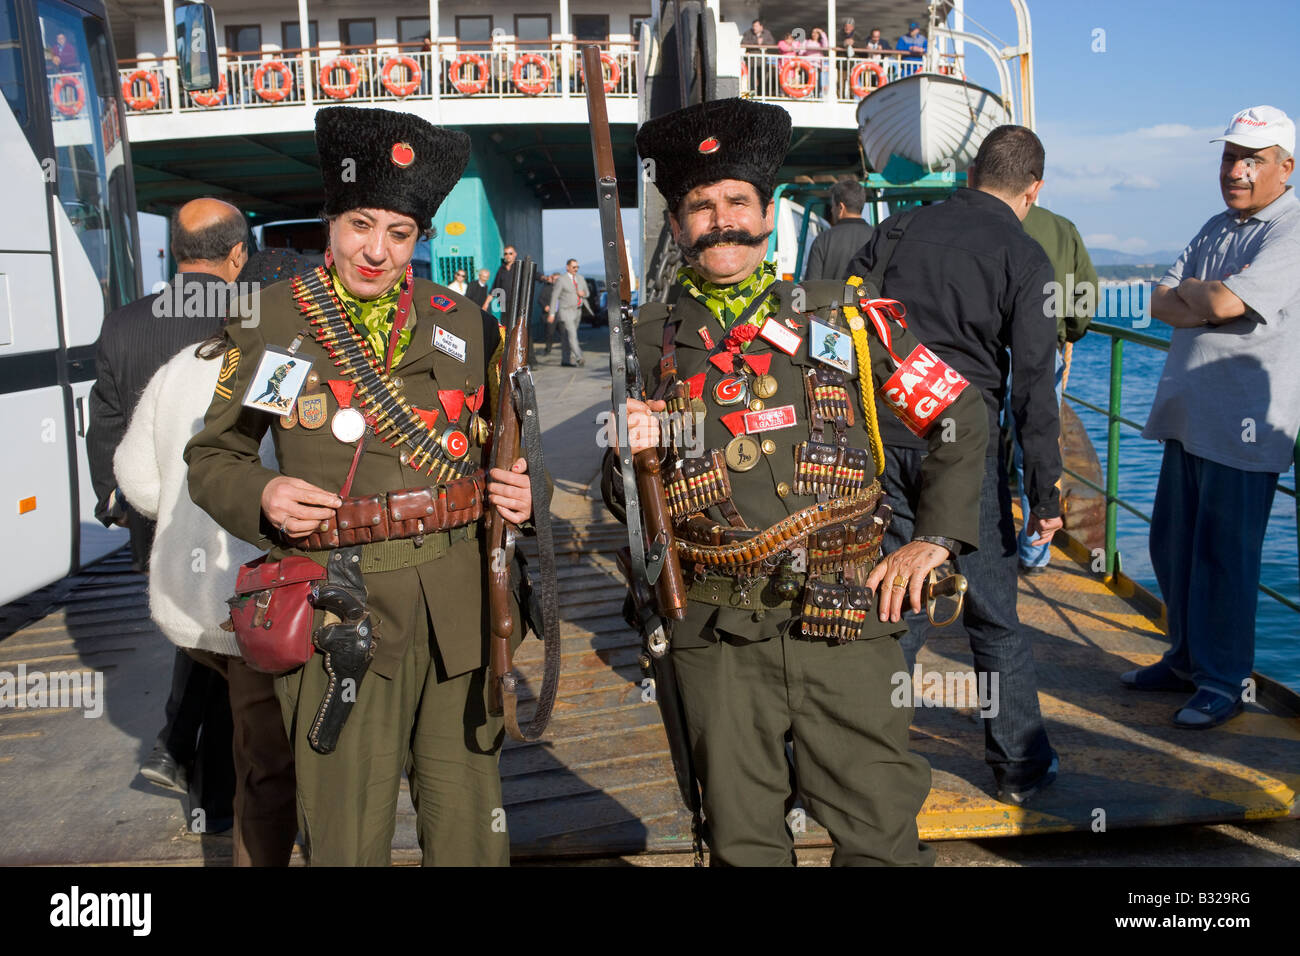 L'homme et la femme dans l'uniforme décoré sur le ferry-boat à la Naval Martyrs Journée pour la campagne des Dardanelles de WW1 Turquie Çanakkale Banque D'Images